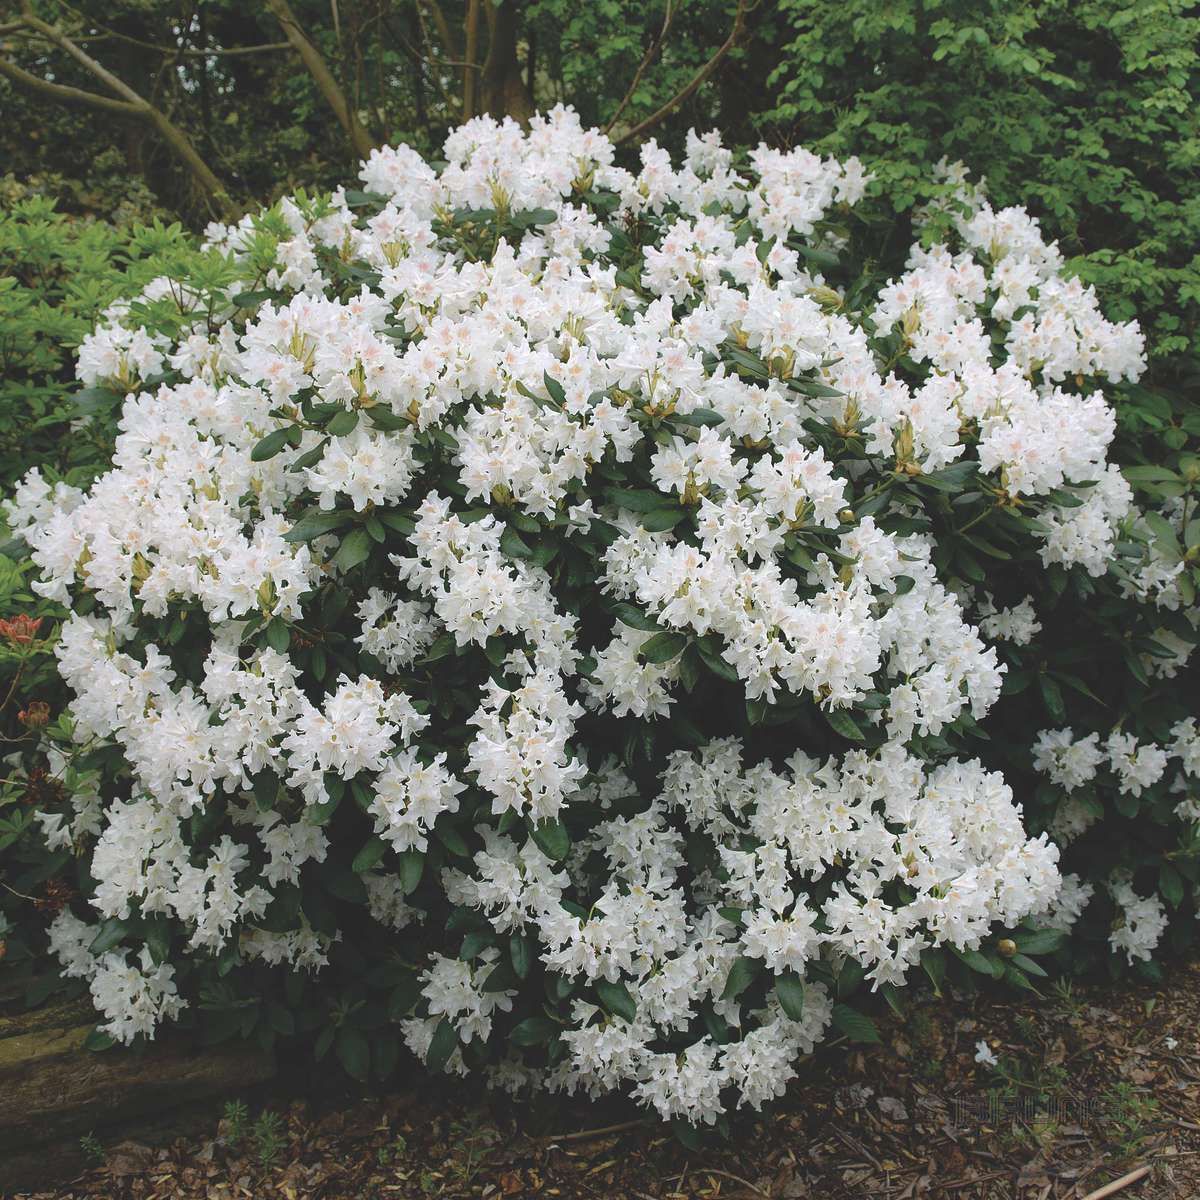 Cunningham White Rhododendron shrub flowering bush for sale in Lebanon